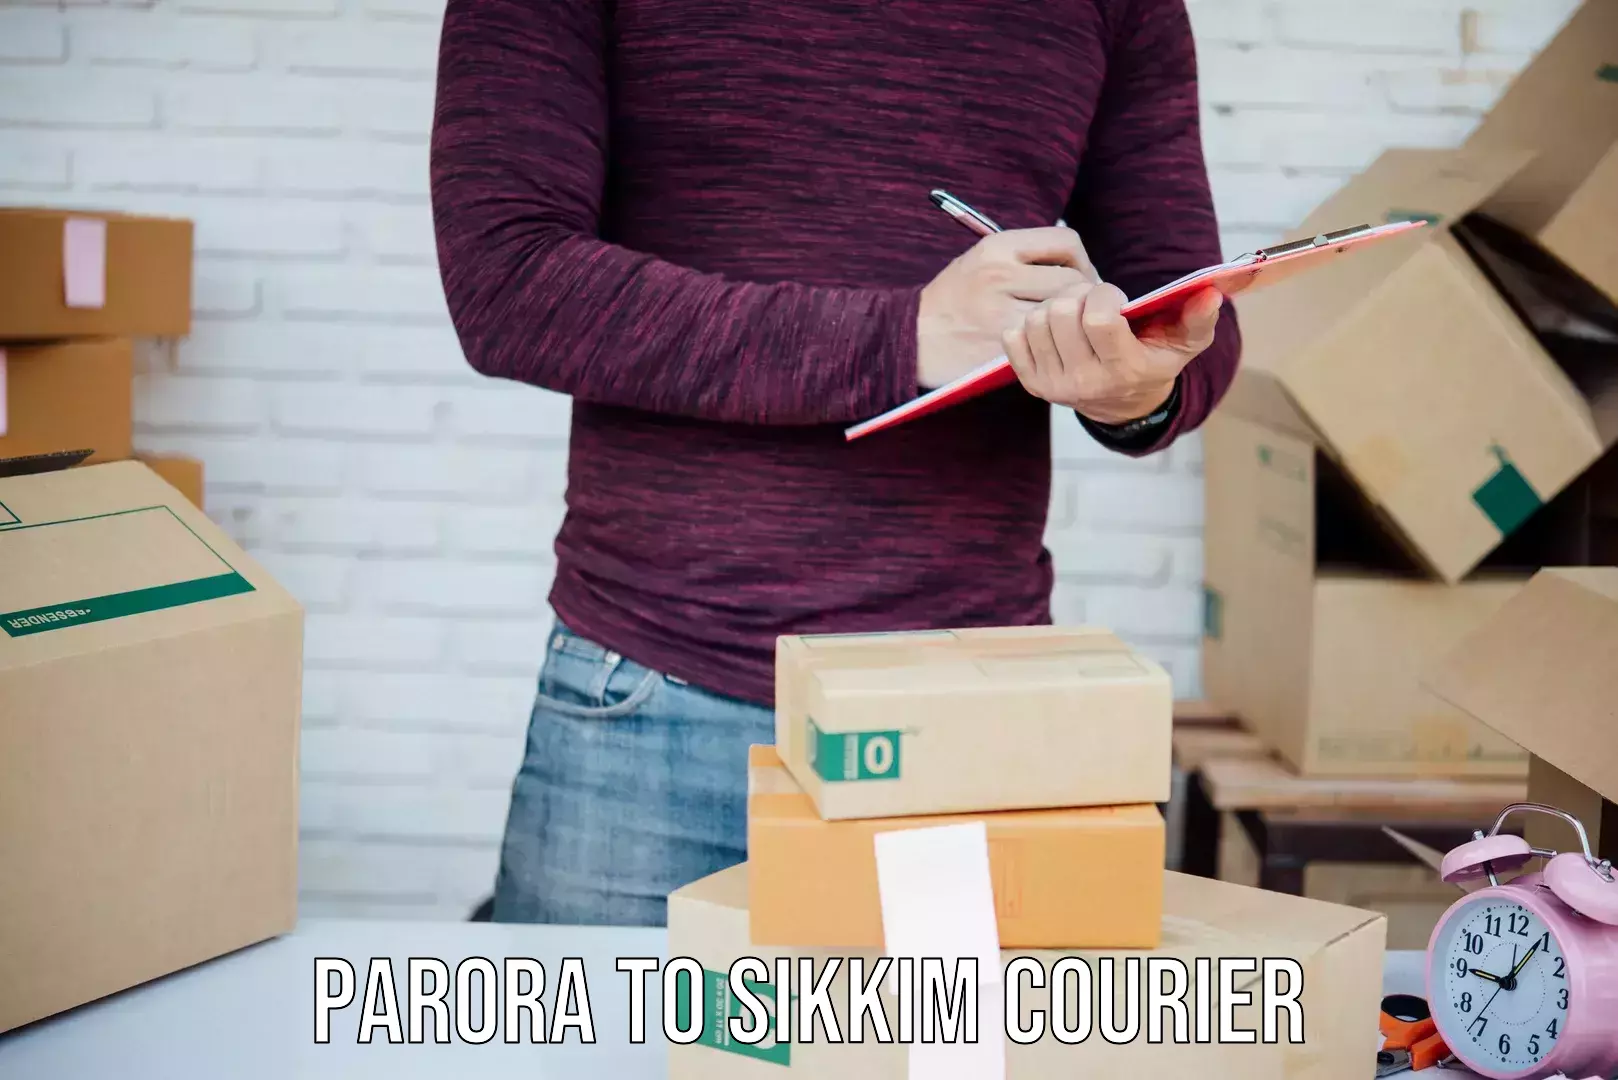 International courier rates Parora to West Sikkim